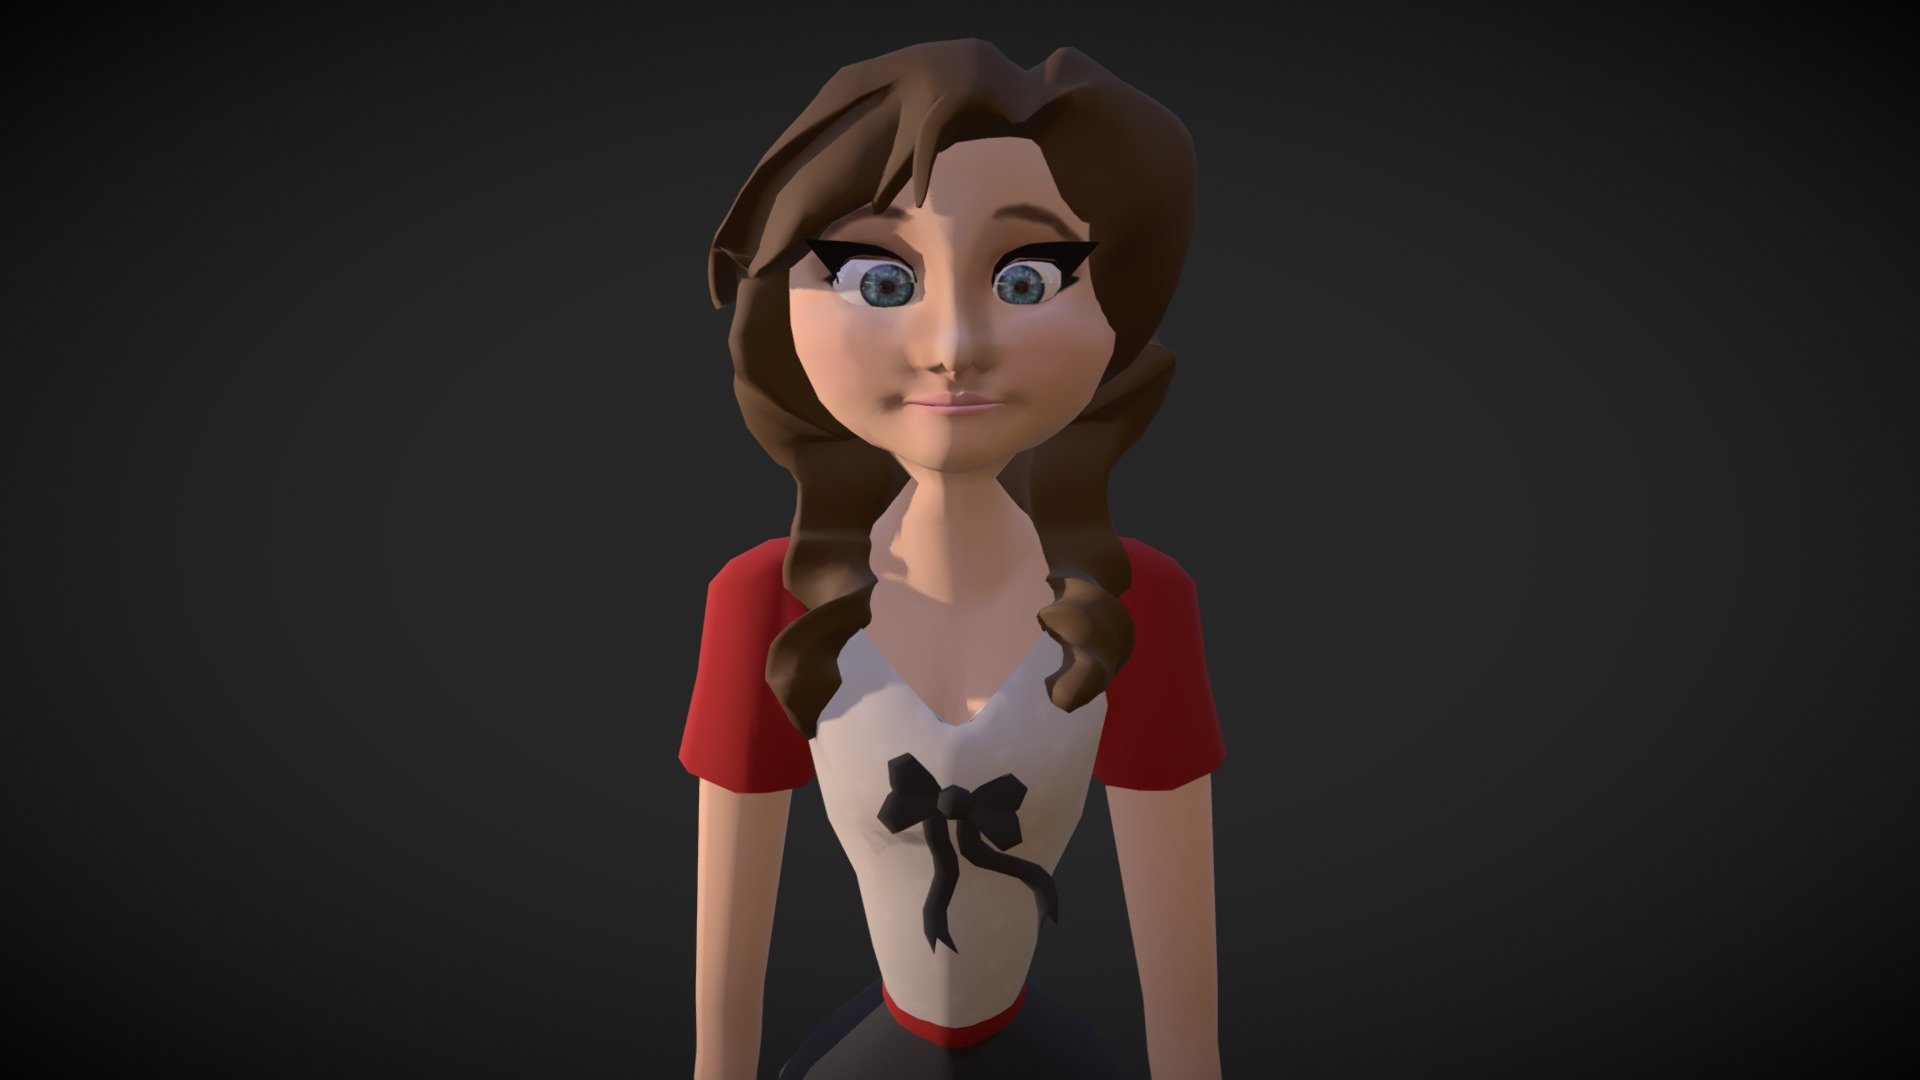 Young cartoon woman 3D model by Laflammemj (Laflammemj